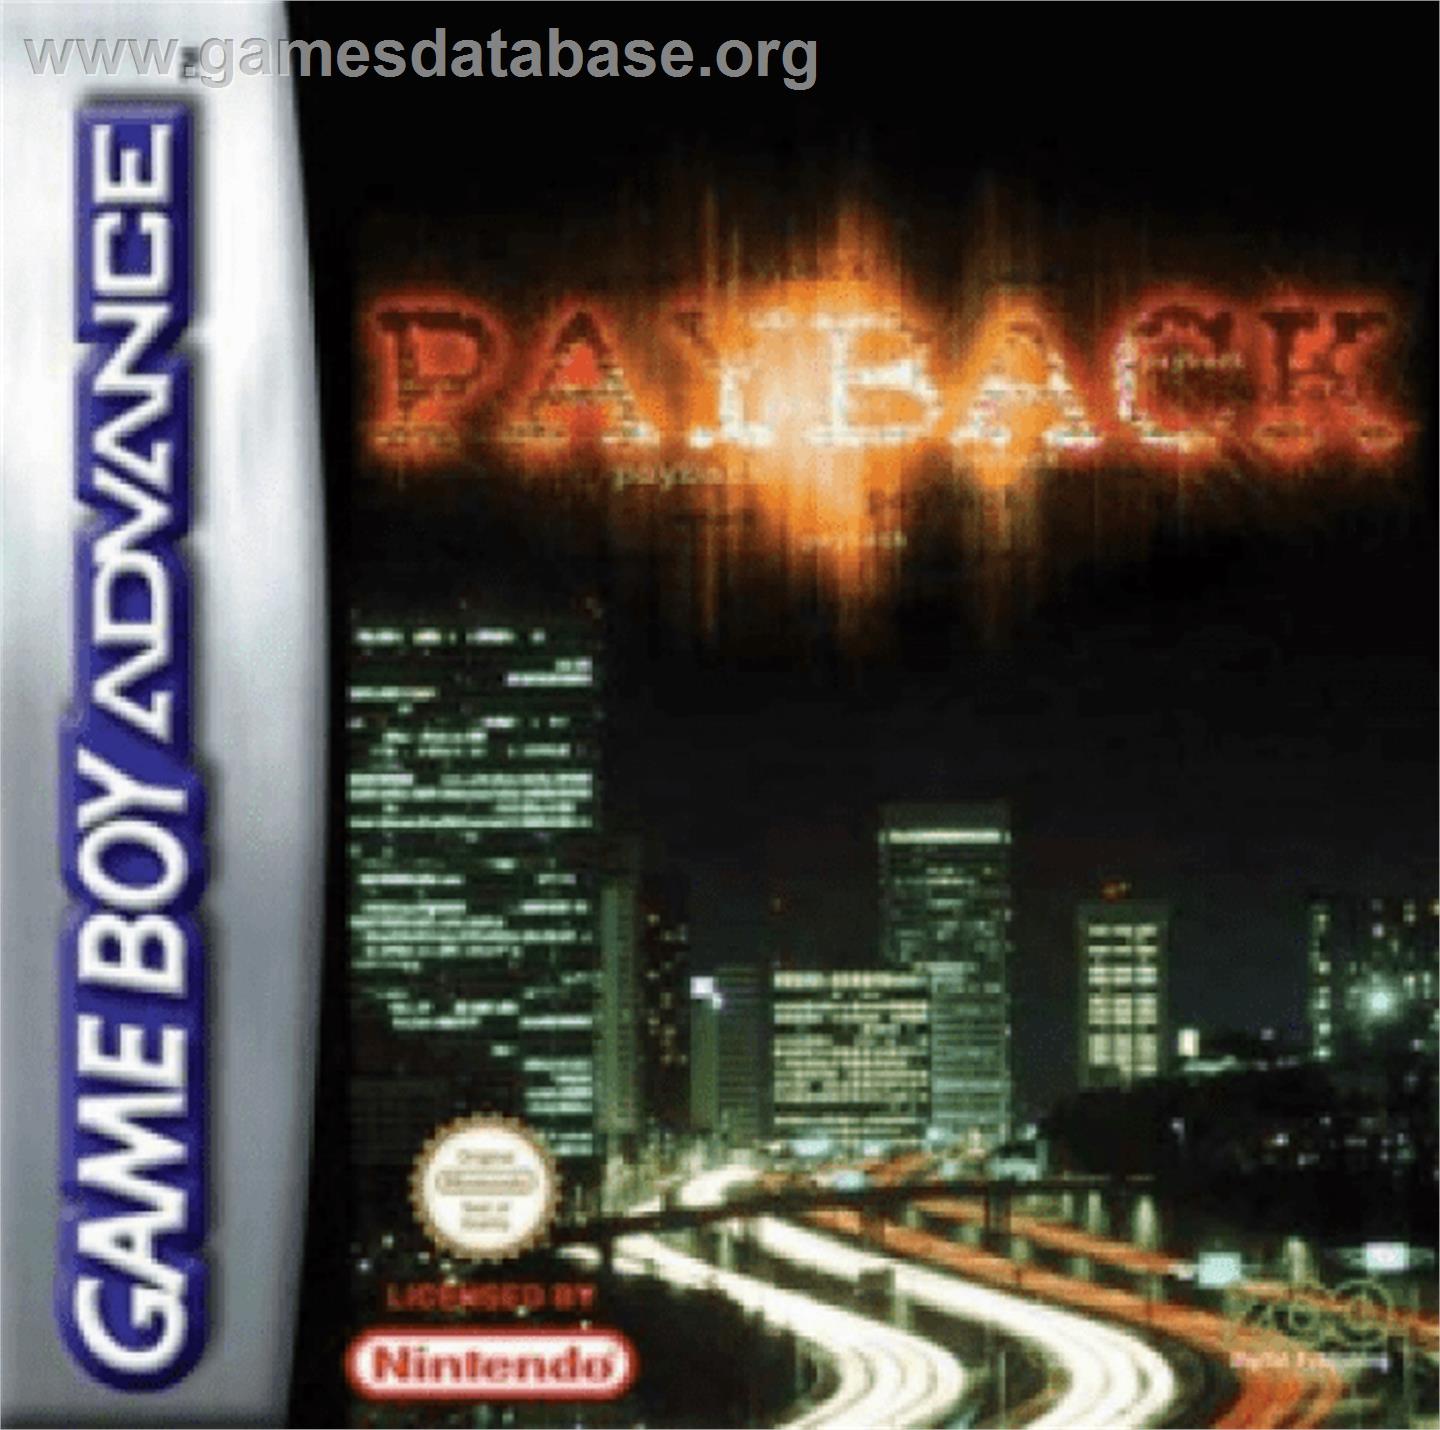 Payback - Nintendo Game Boy Advance - Artwork - Box